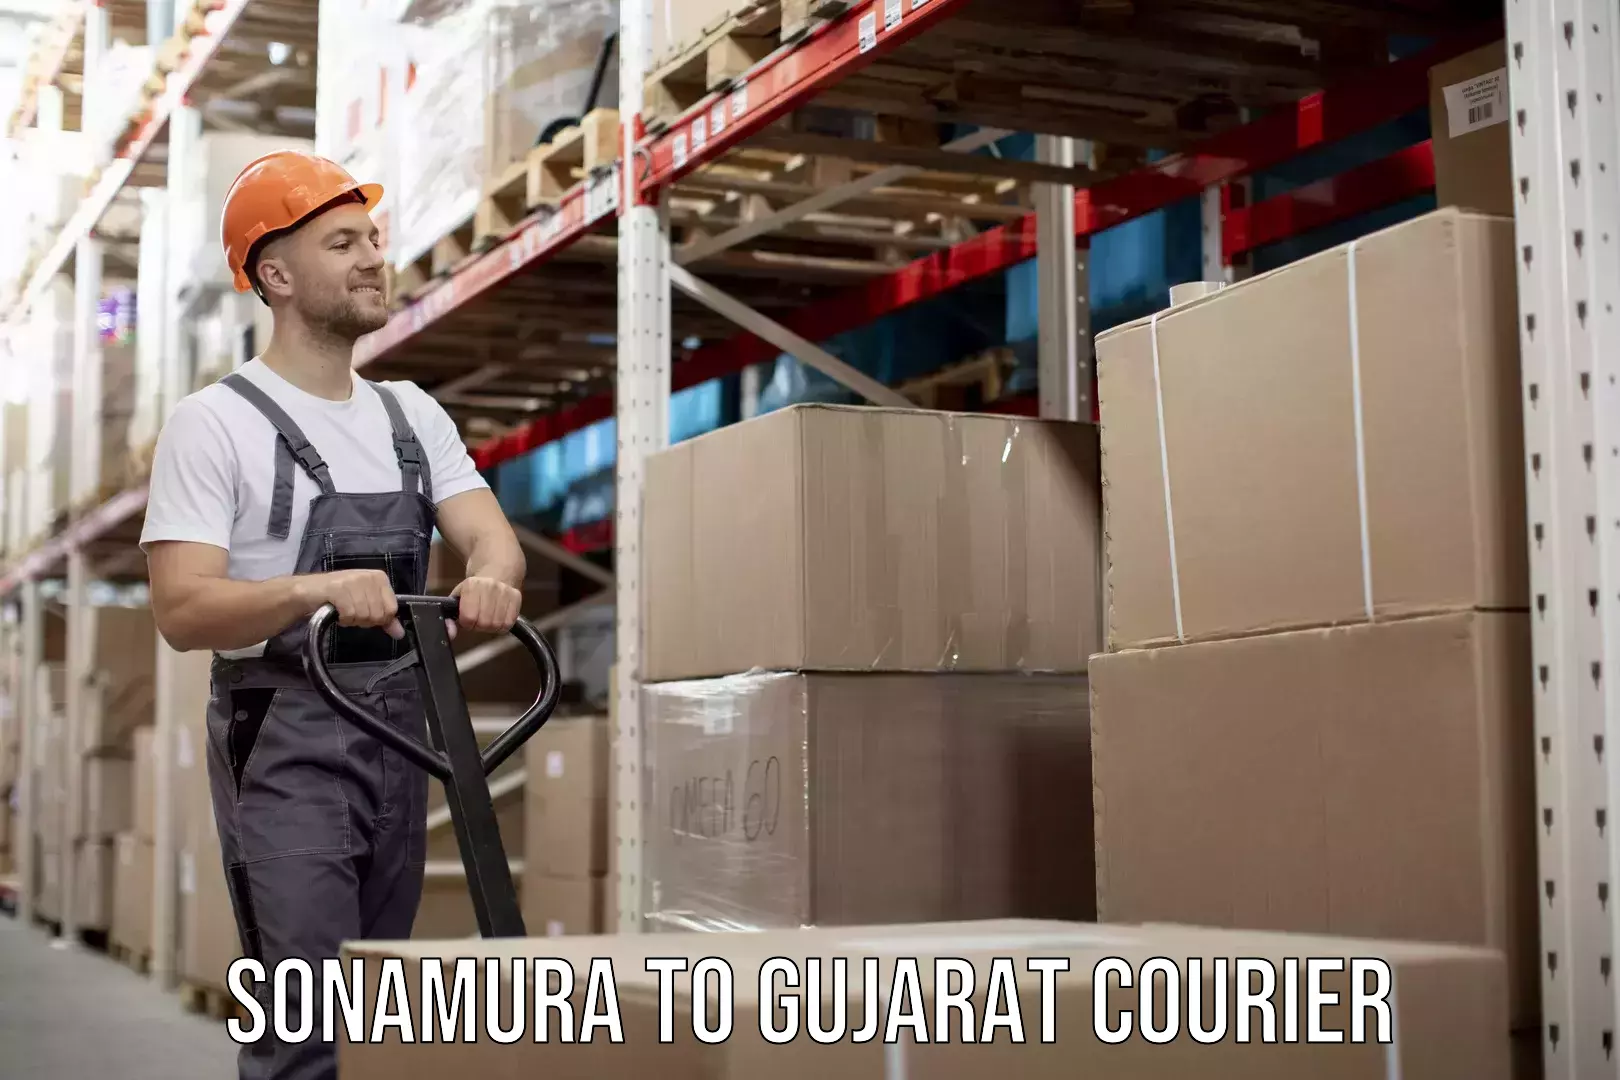 Premium courier solutions in Sonamura to Gujarat